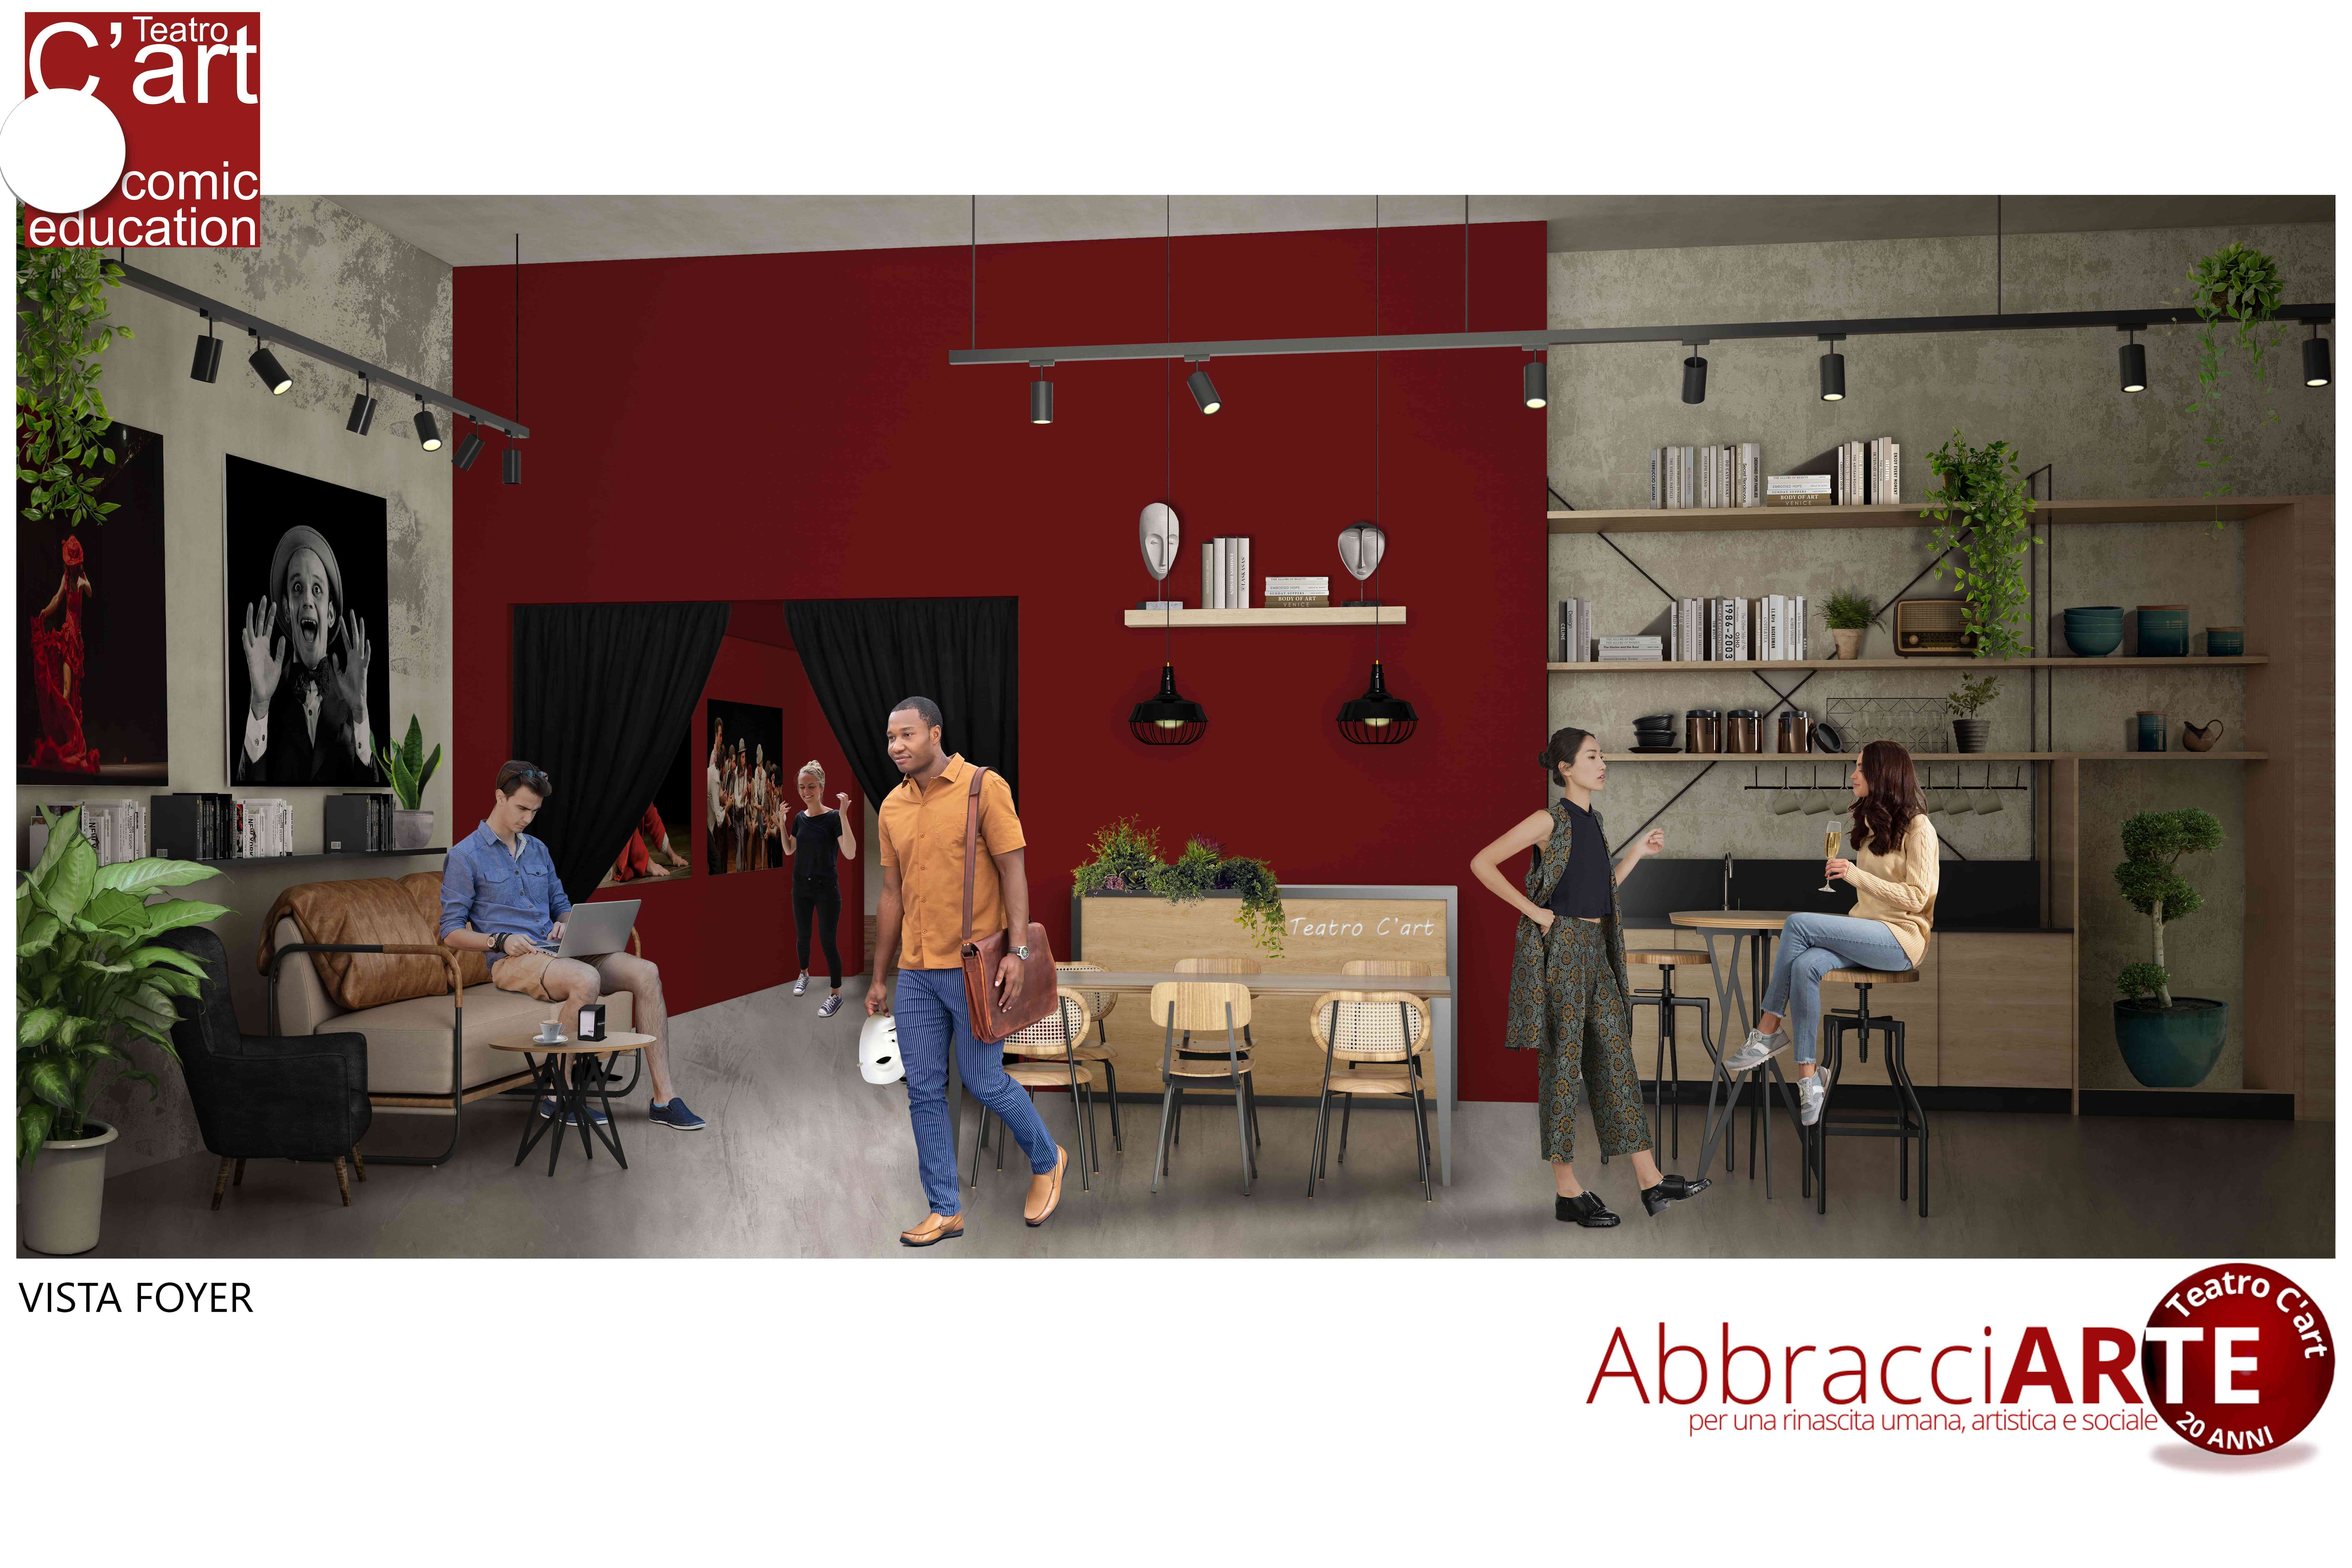 AbbracciARTE -Teatro C'art